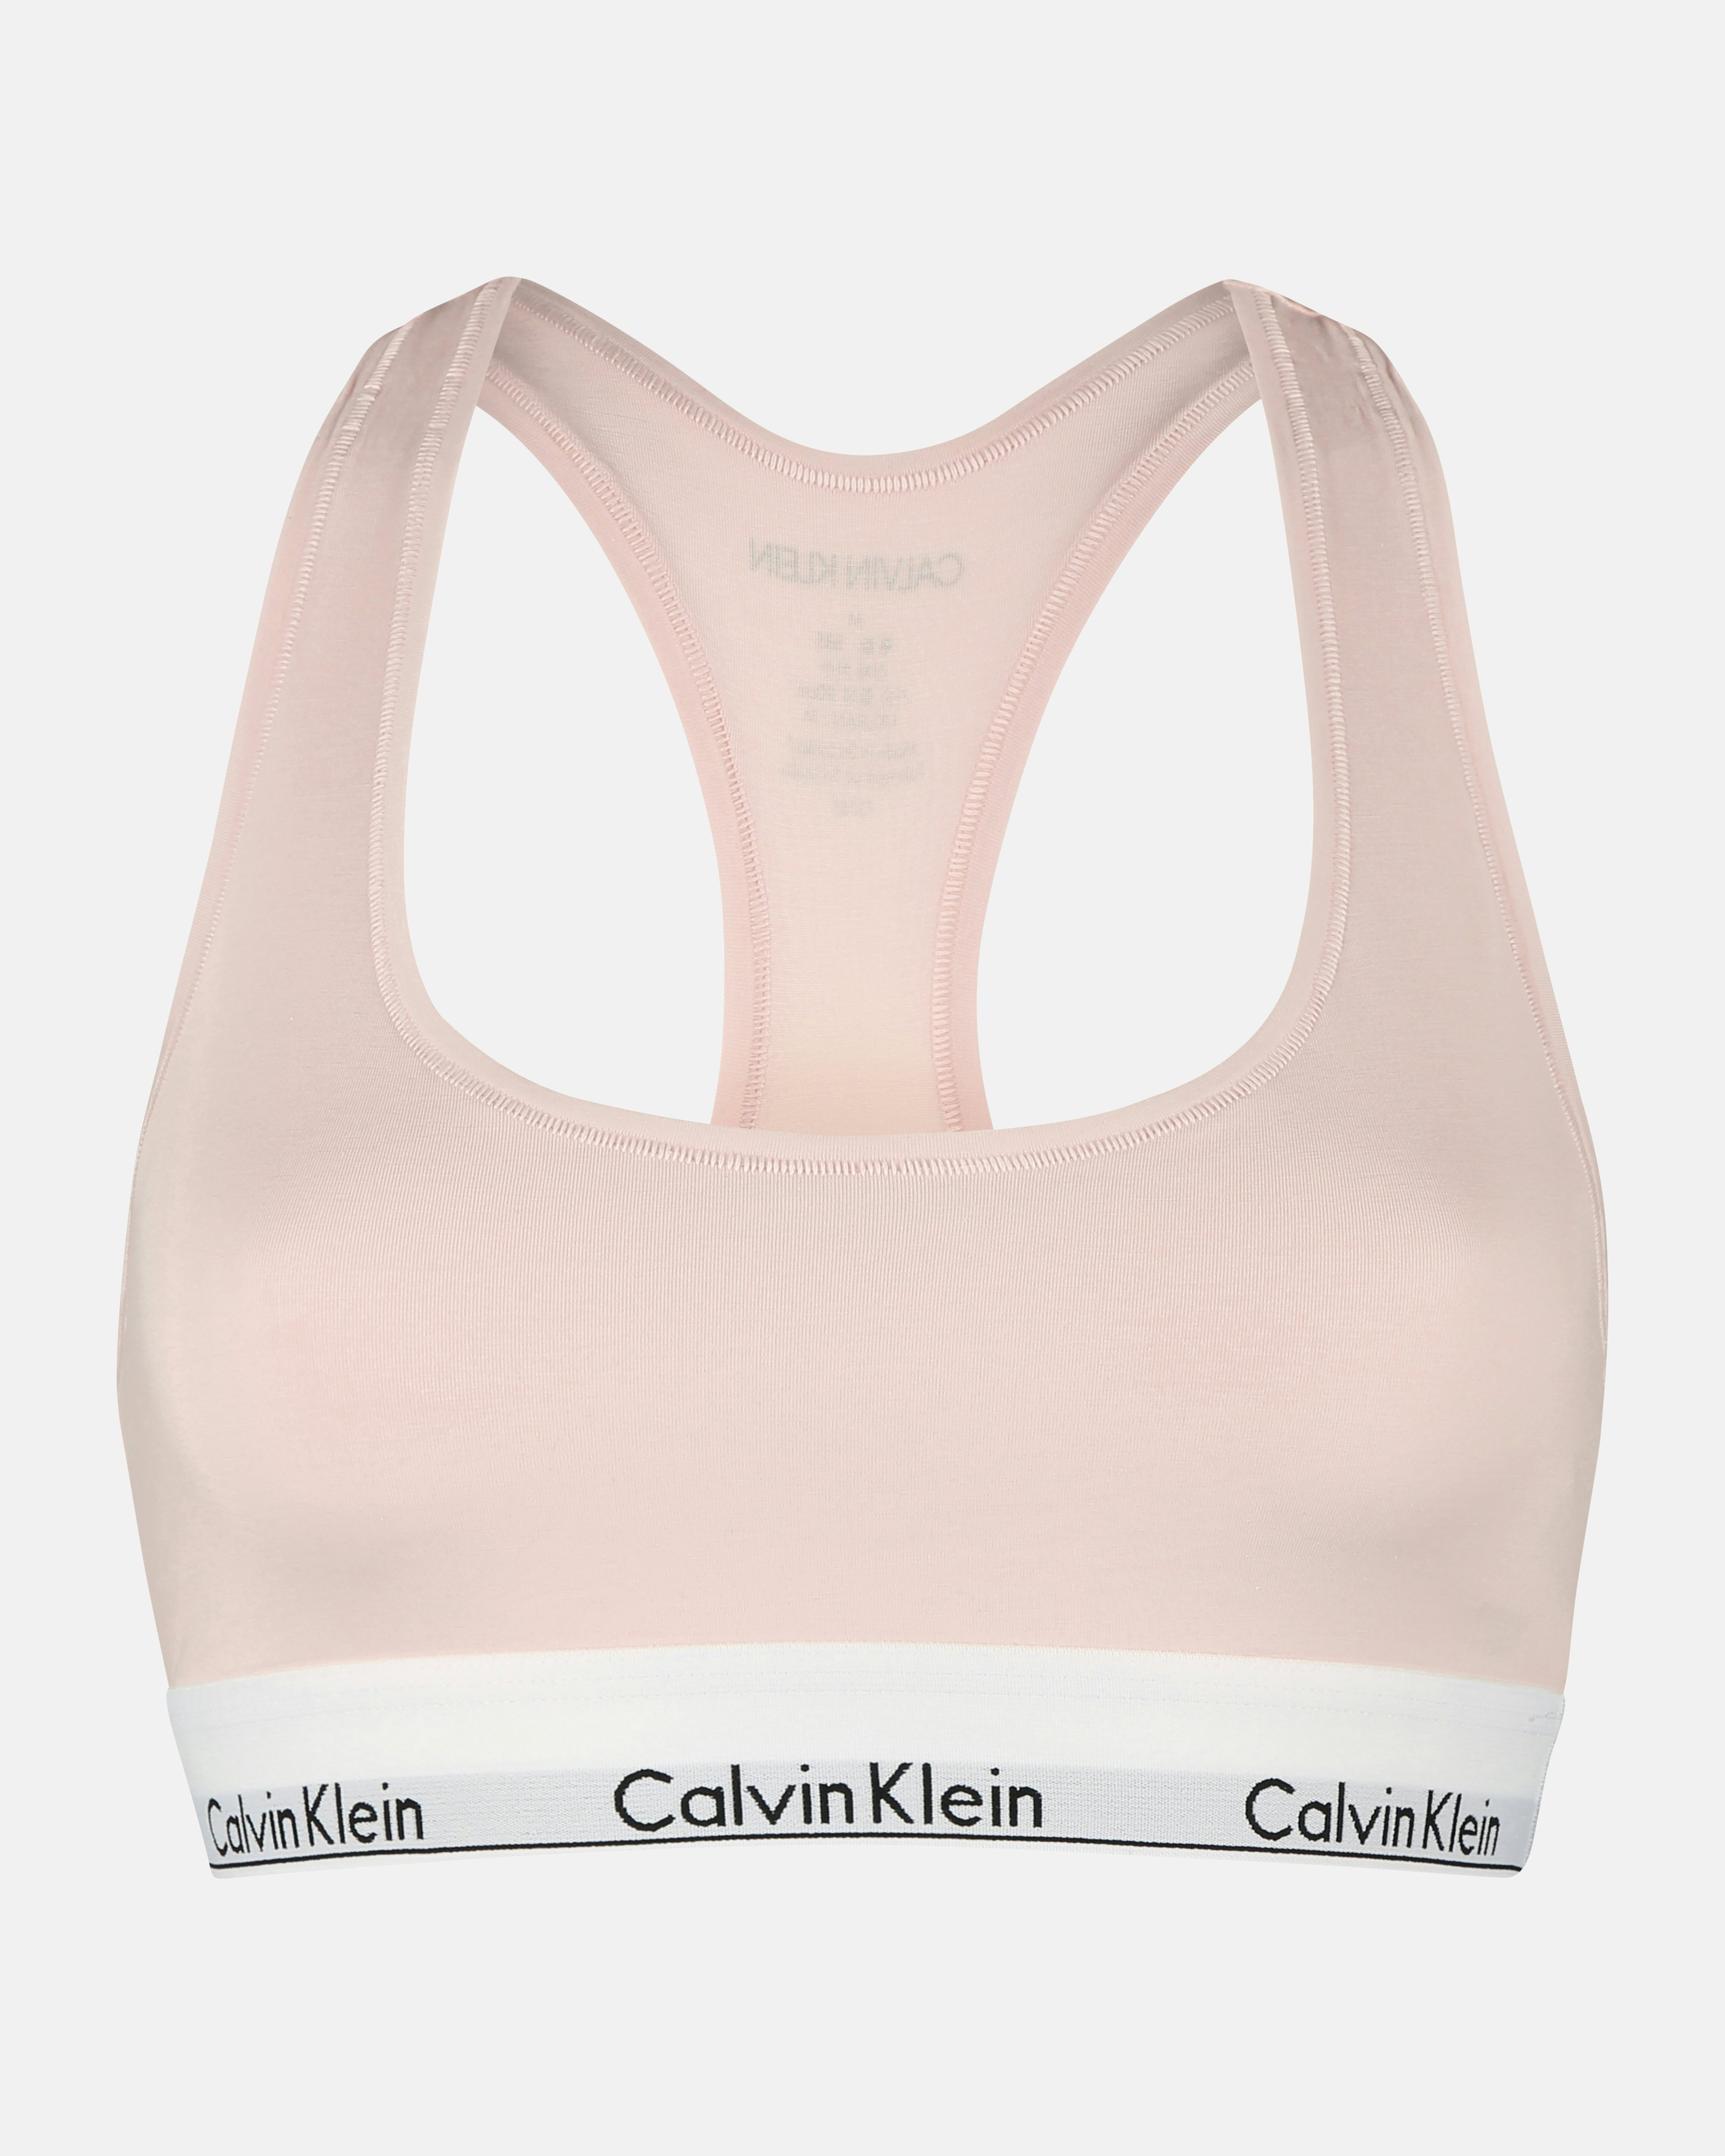 Calvin Klein Underwear Unlined Bra Pink, Women